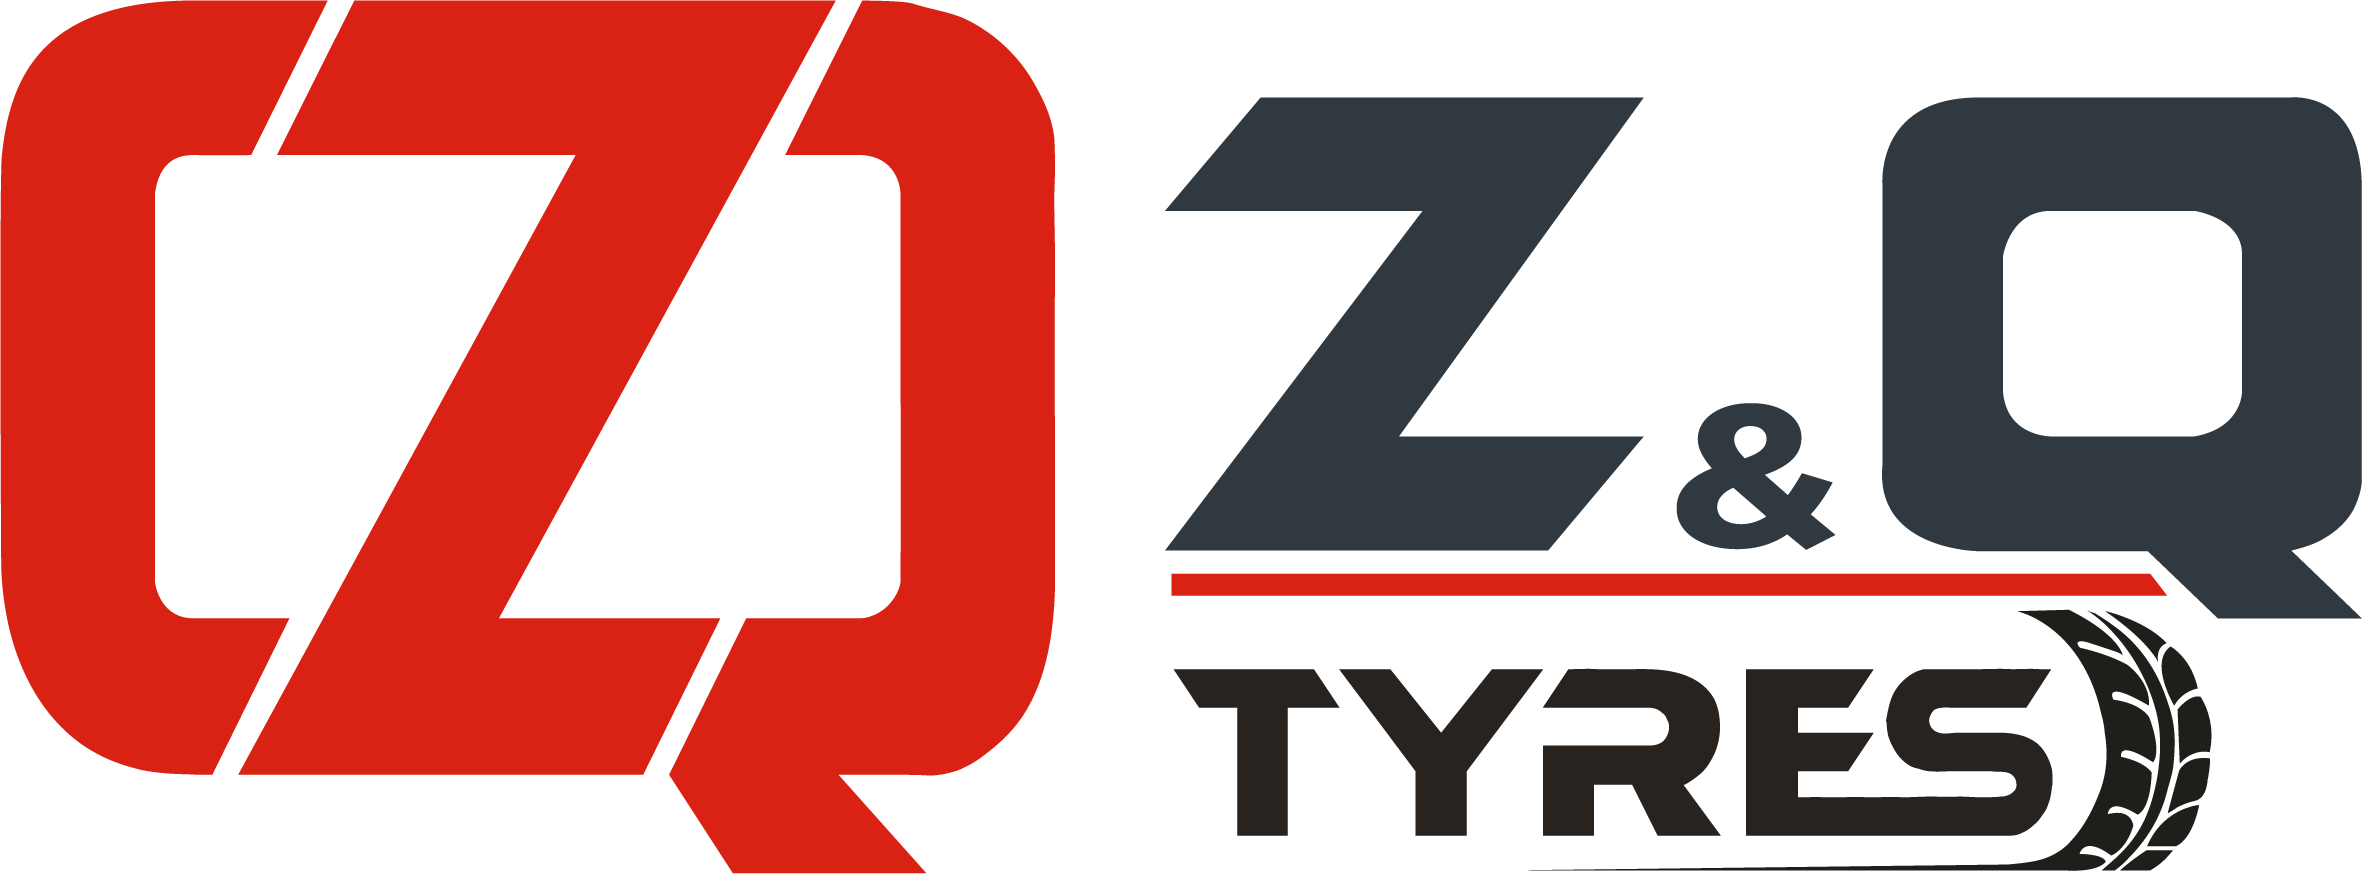 إطارات ZQ TYRES - الإطارات الزراعية والإطارات الصناعية وإطارات آلات البناء | تجديد الإطارات وإعادة التجديد على الساخن والبارد وملحقاتها